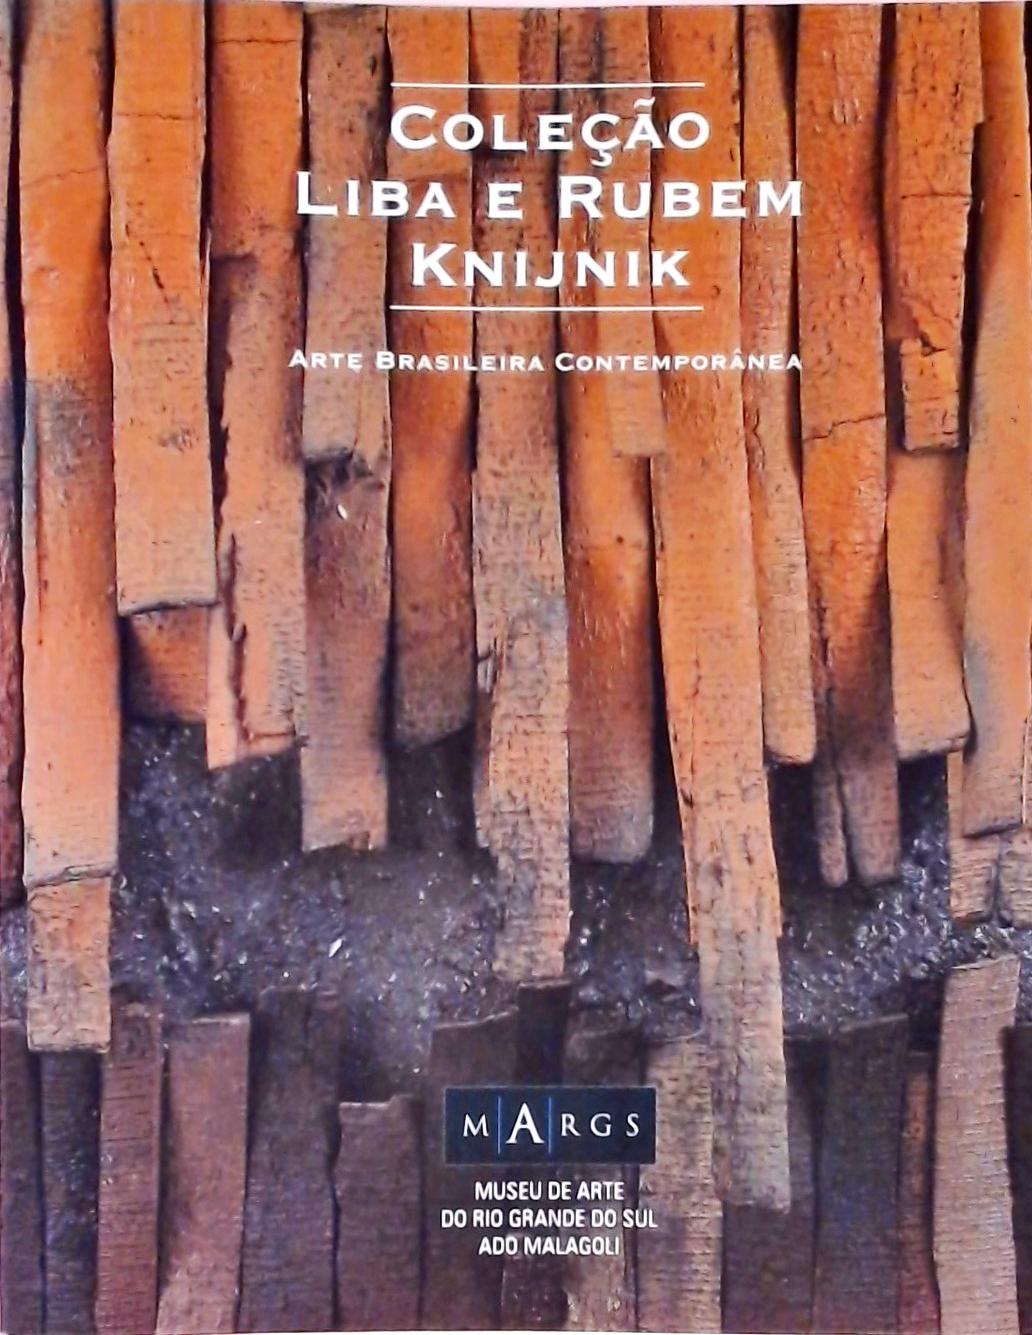 Coleção Liba e Rubem Knijnik